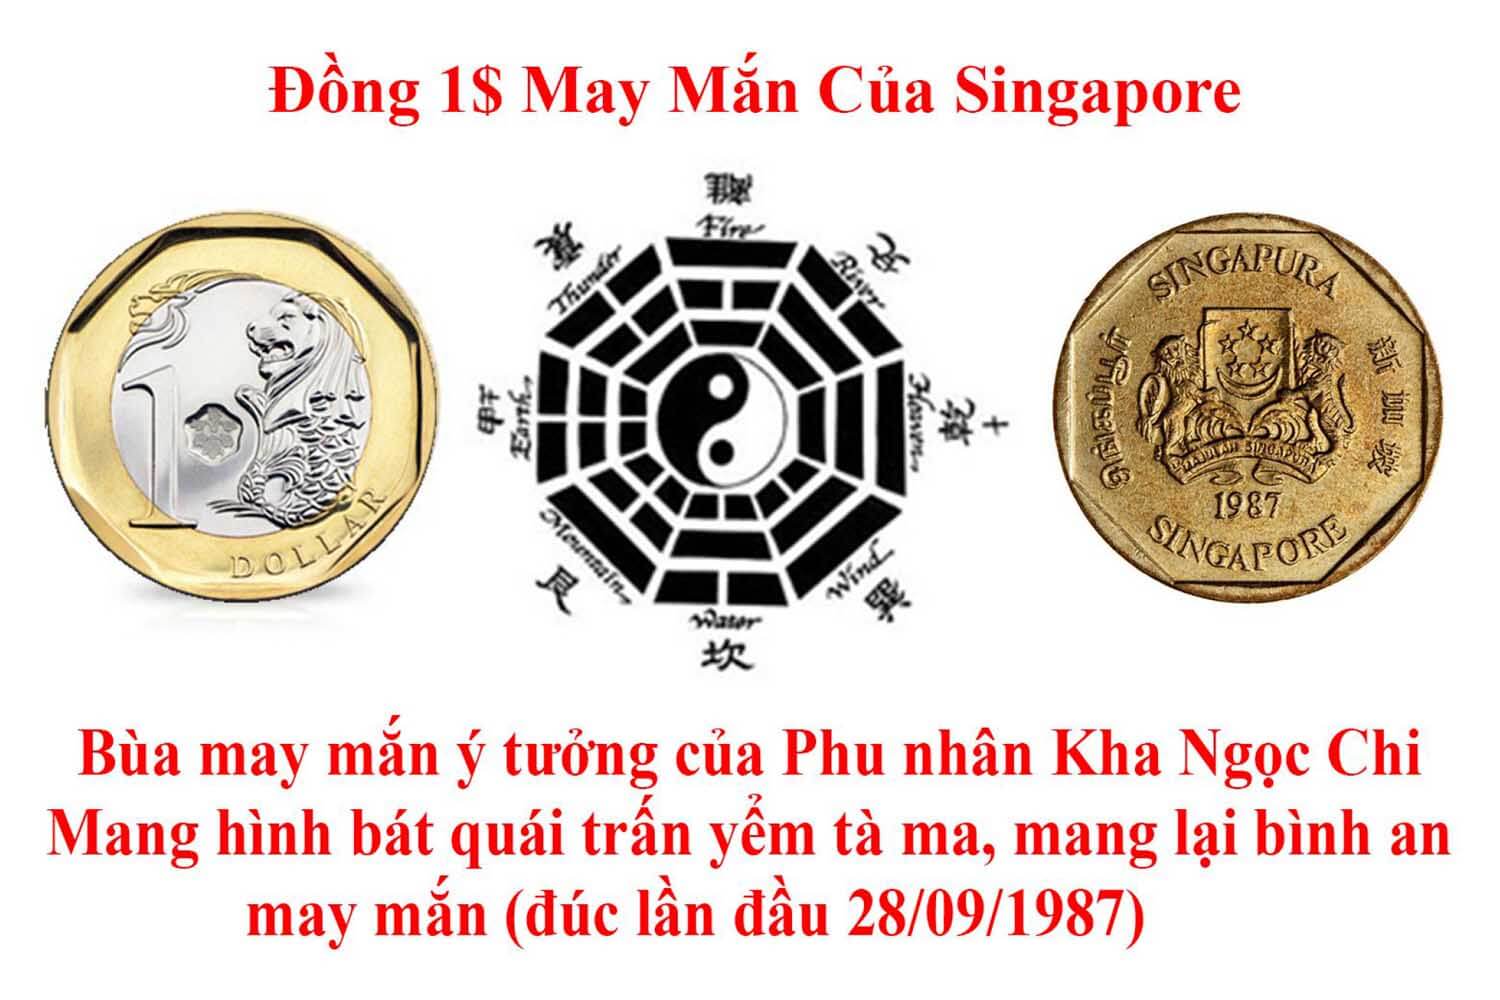 Bí ẩn đồng tiền bát quái của ông Lý Quang Diệu